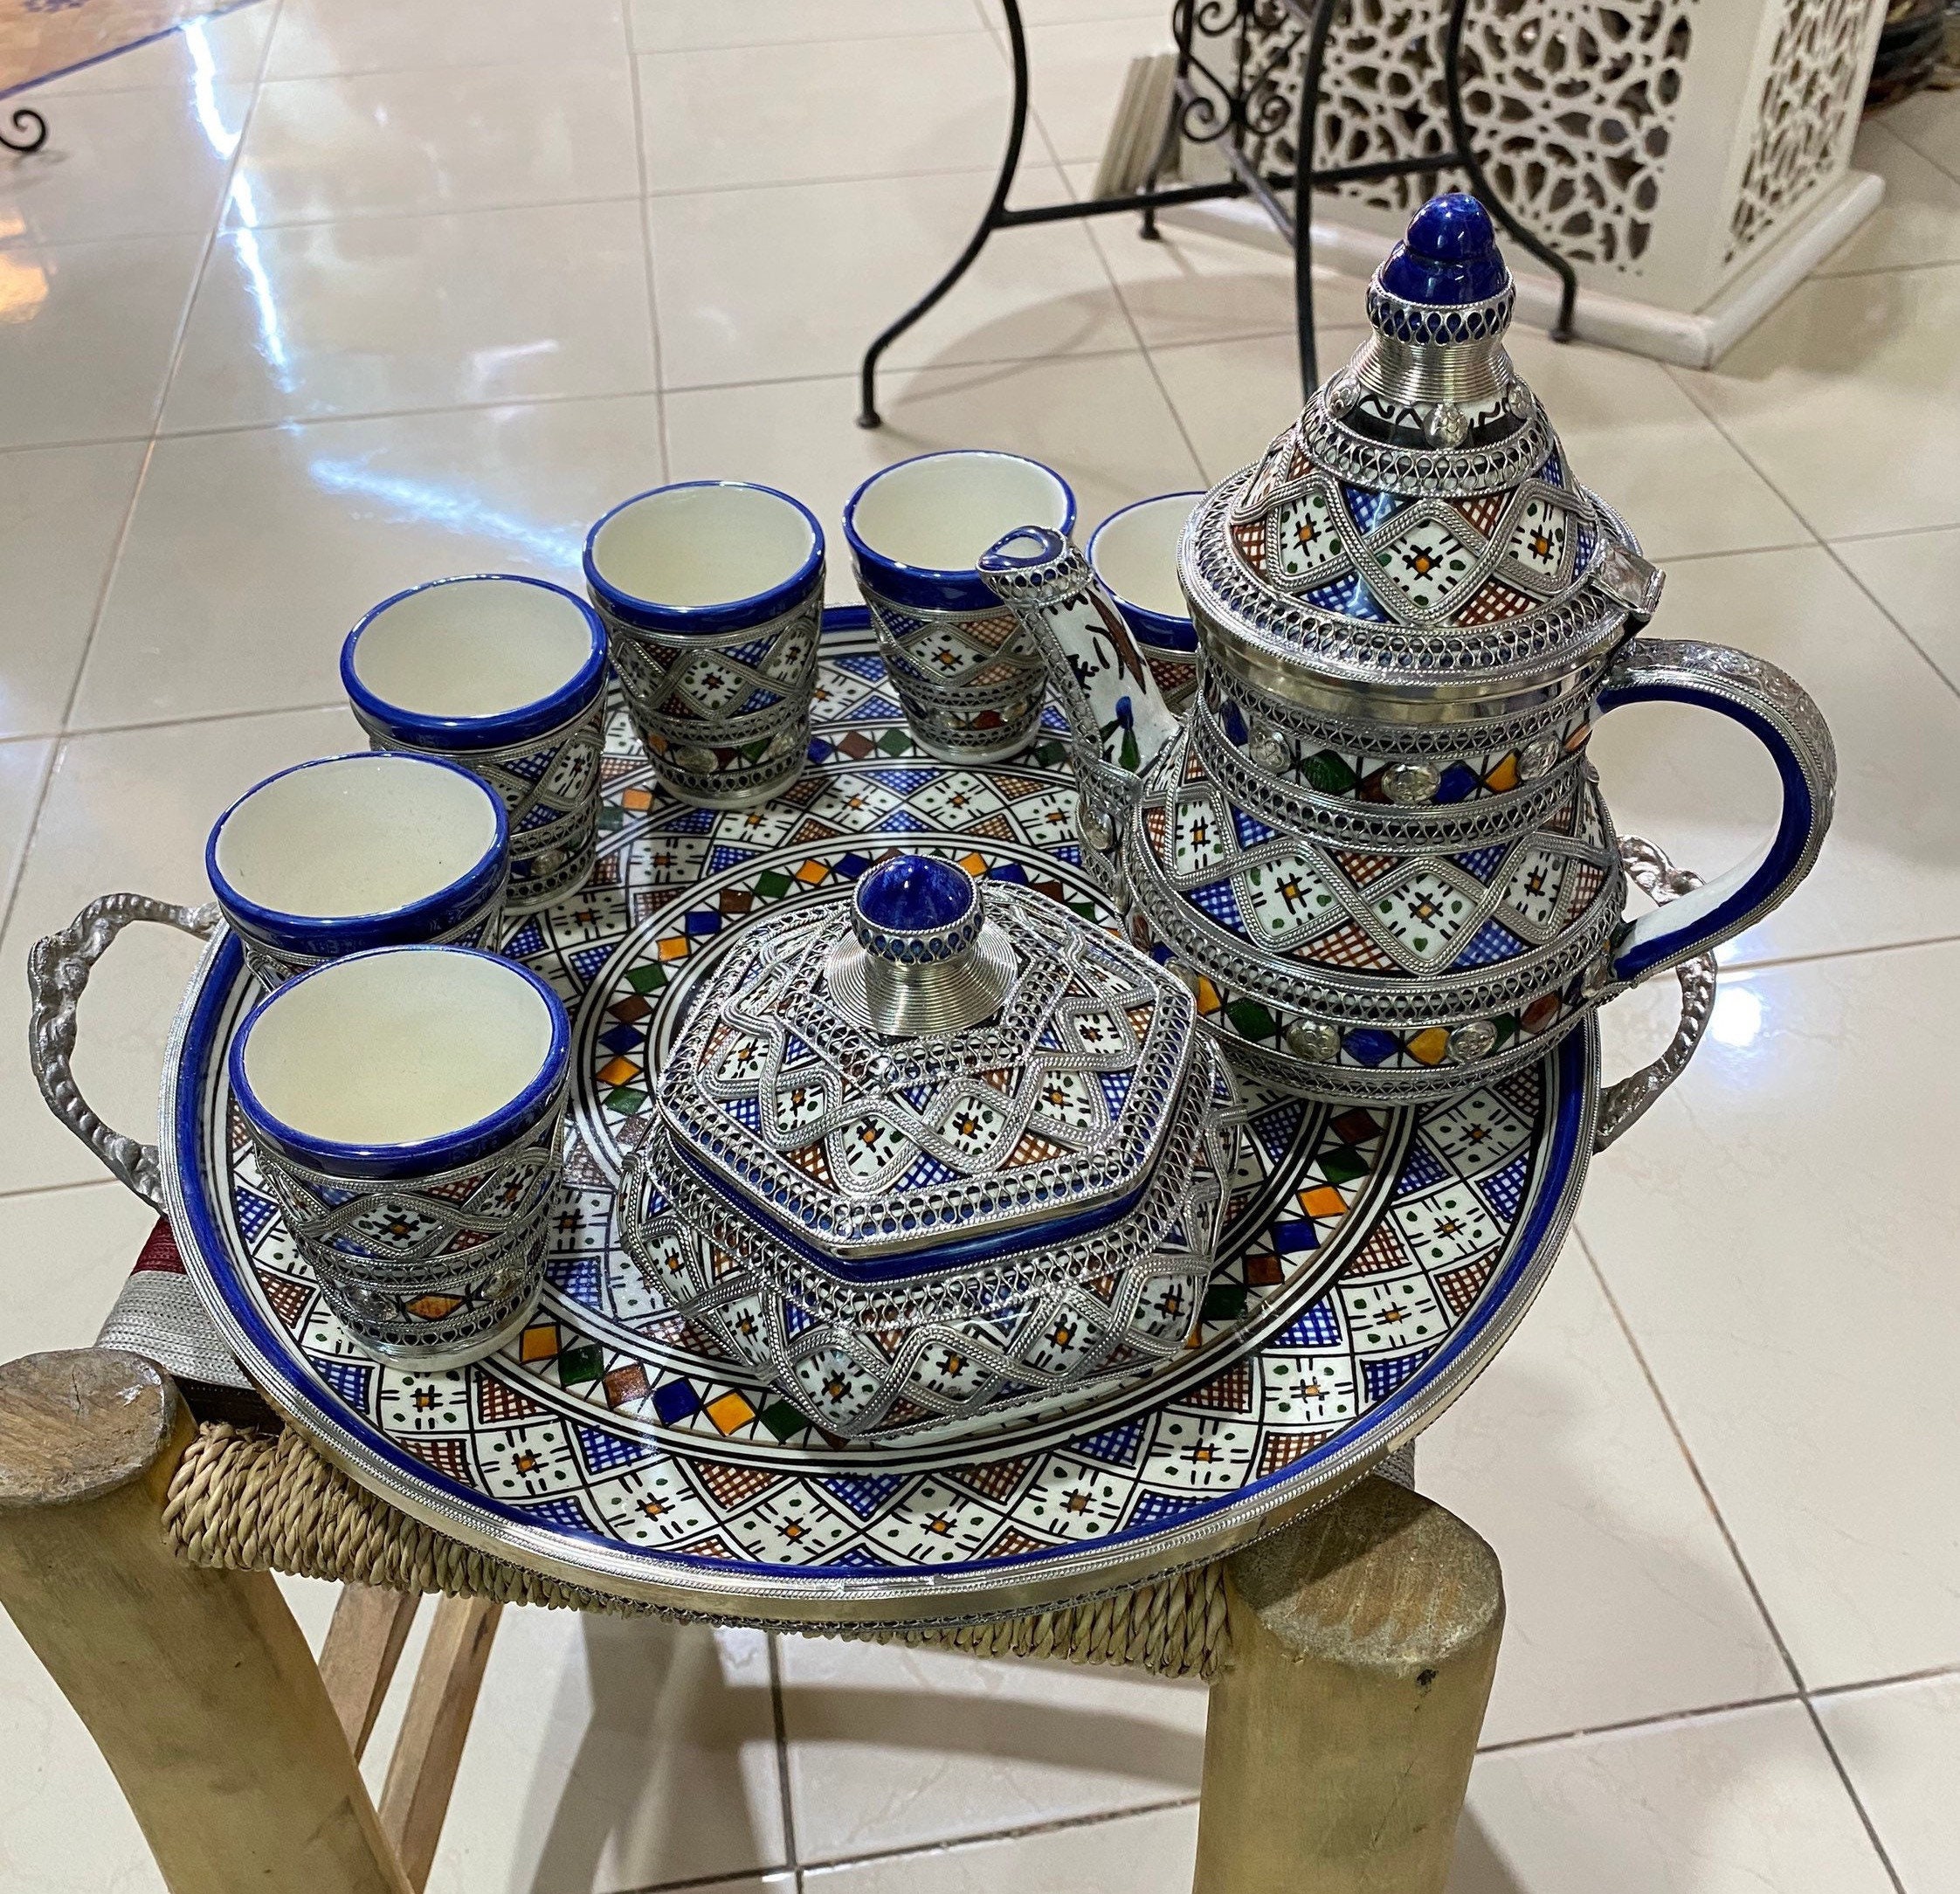 Juego de té marroquí, tetera y vasos adornados al estilo